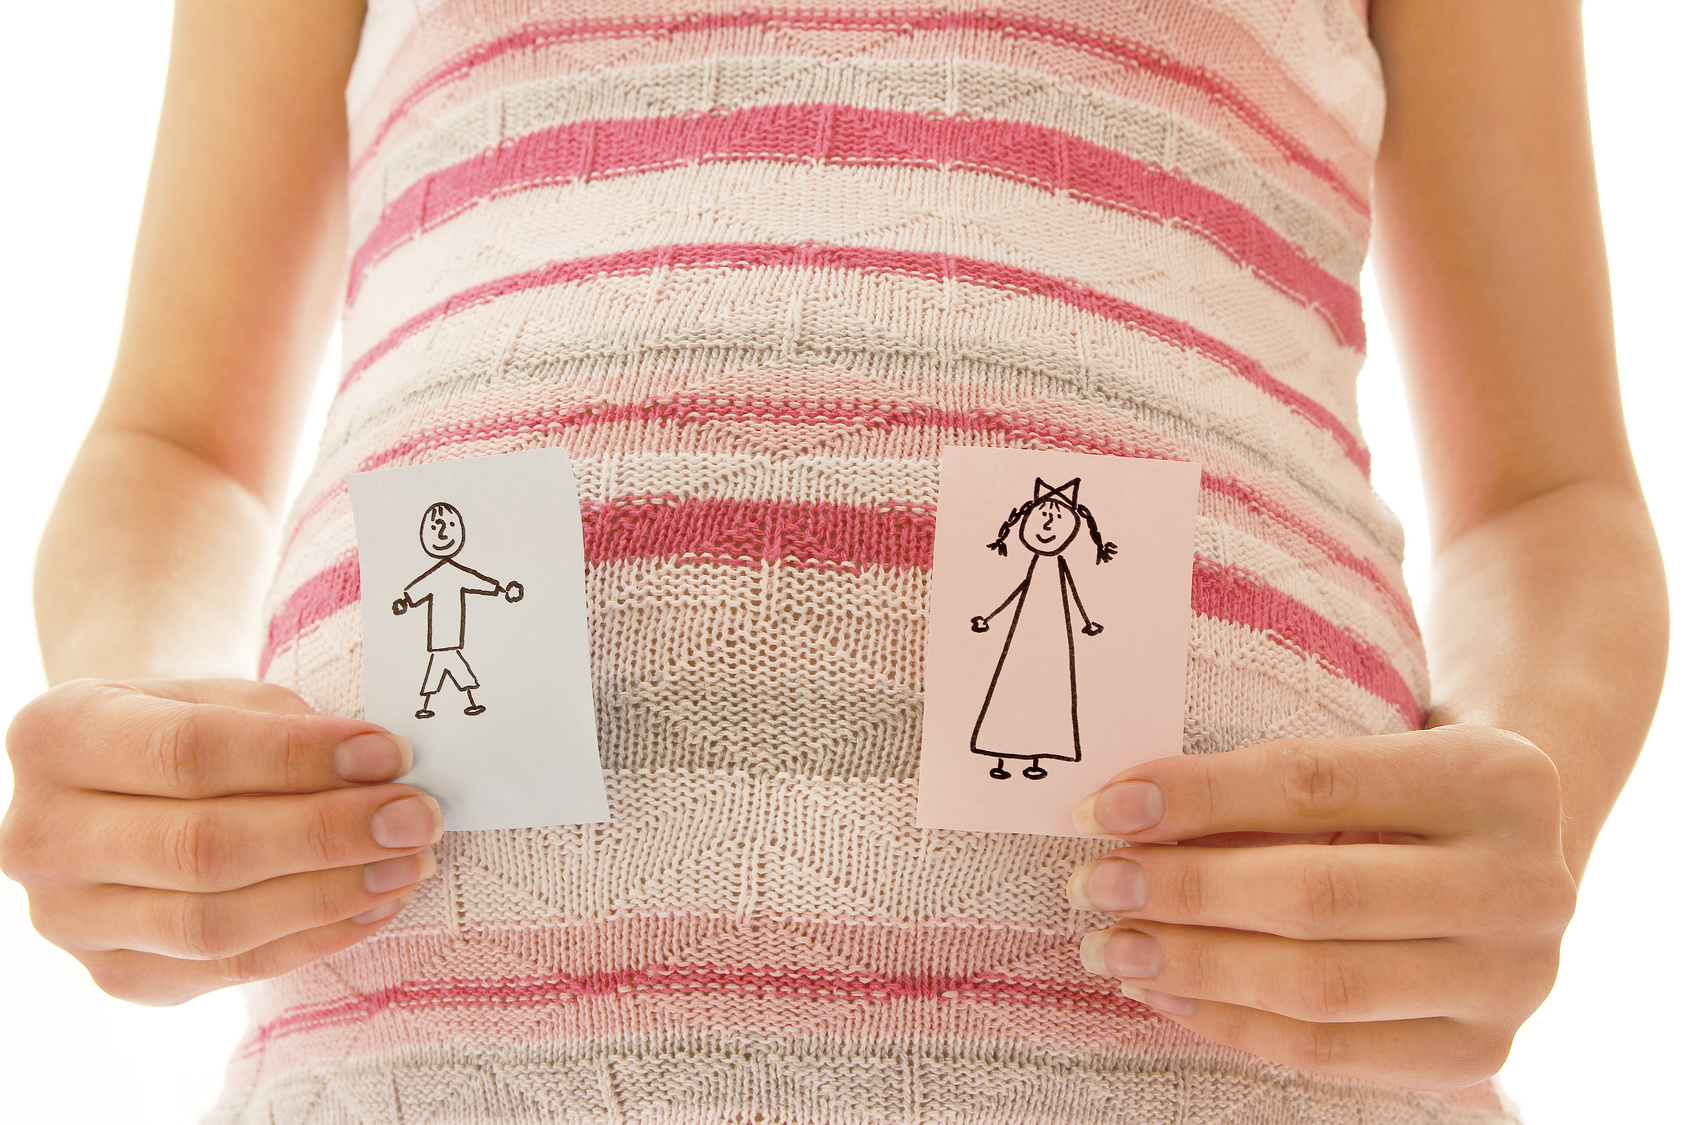 Vientres de alquiler: 'mujeres horno' o solución a la infertilidad